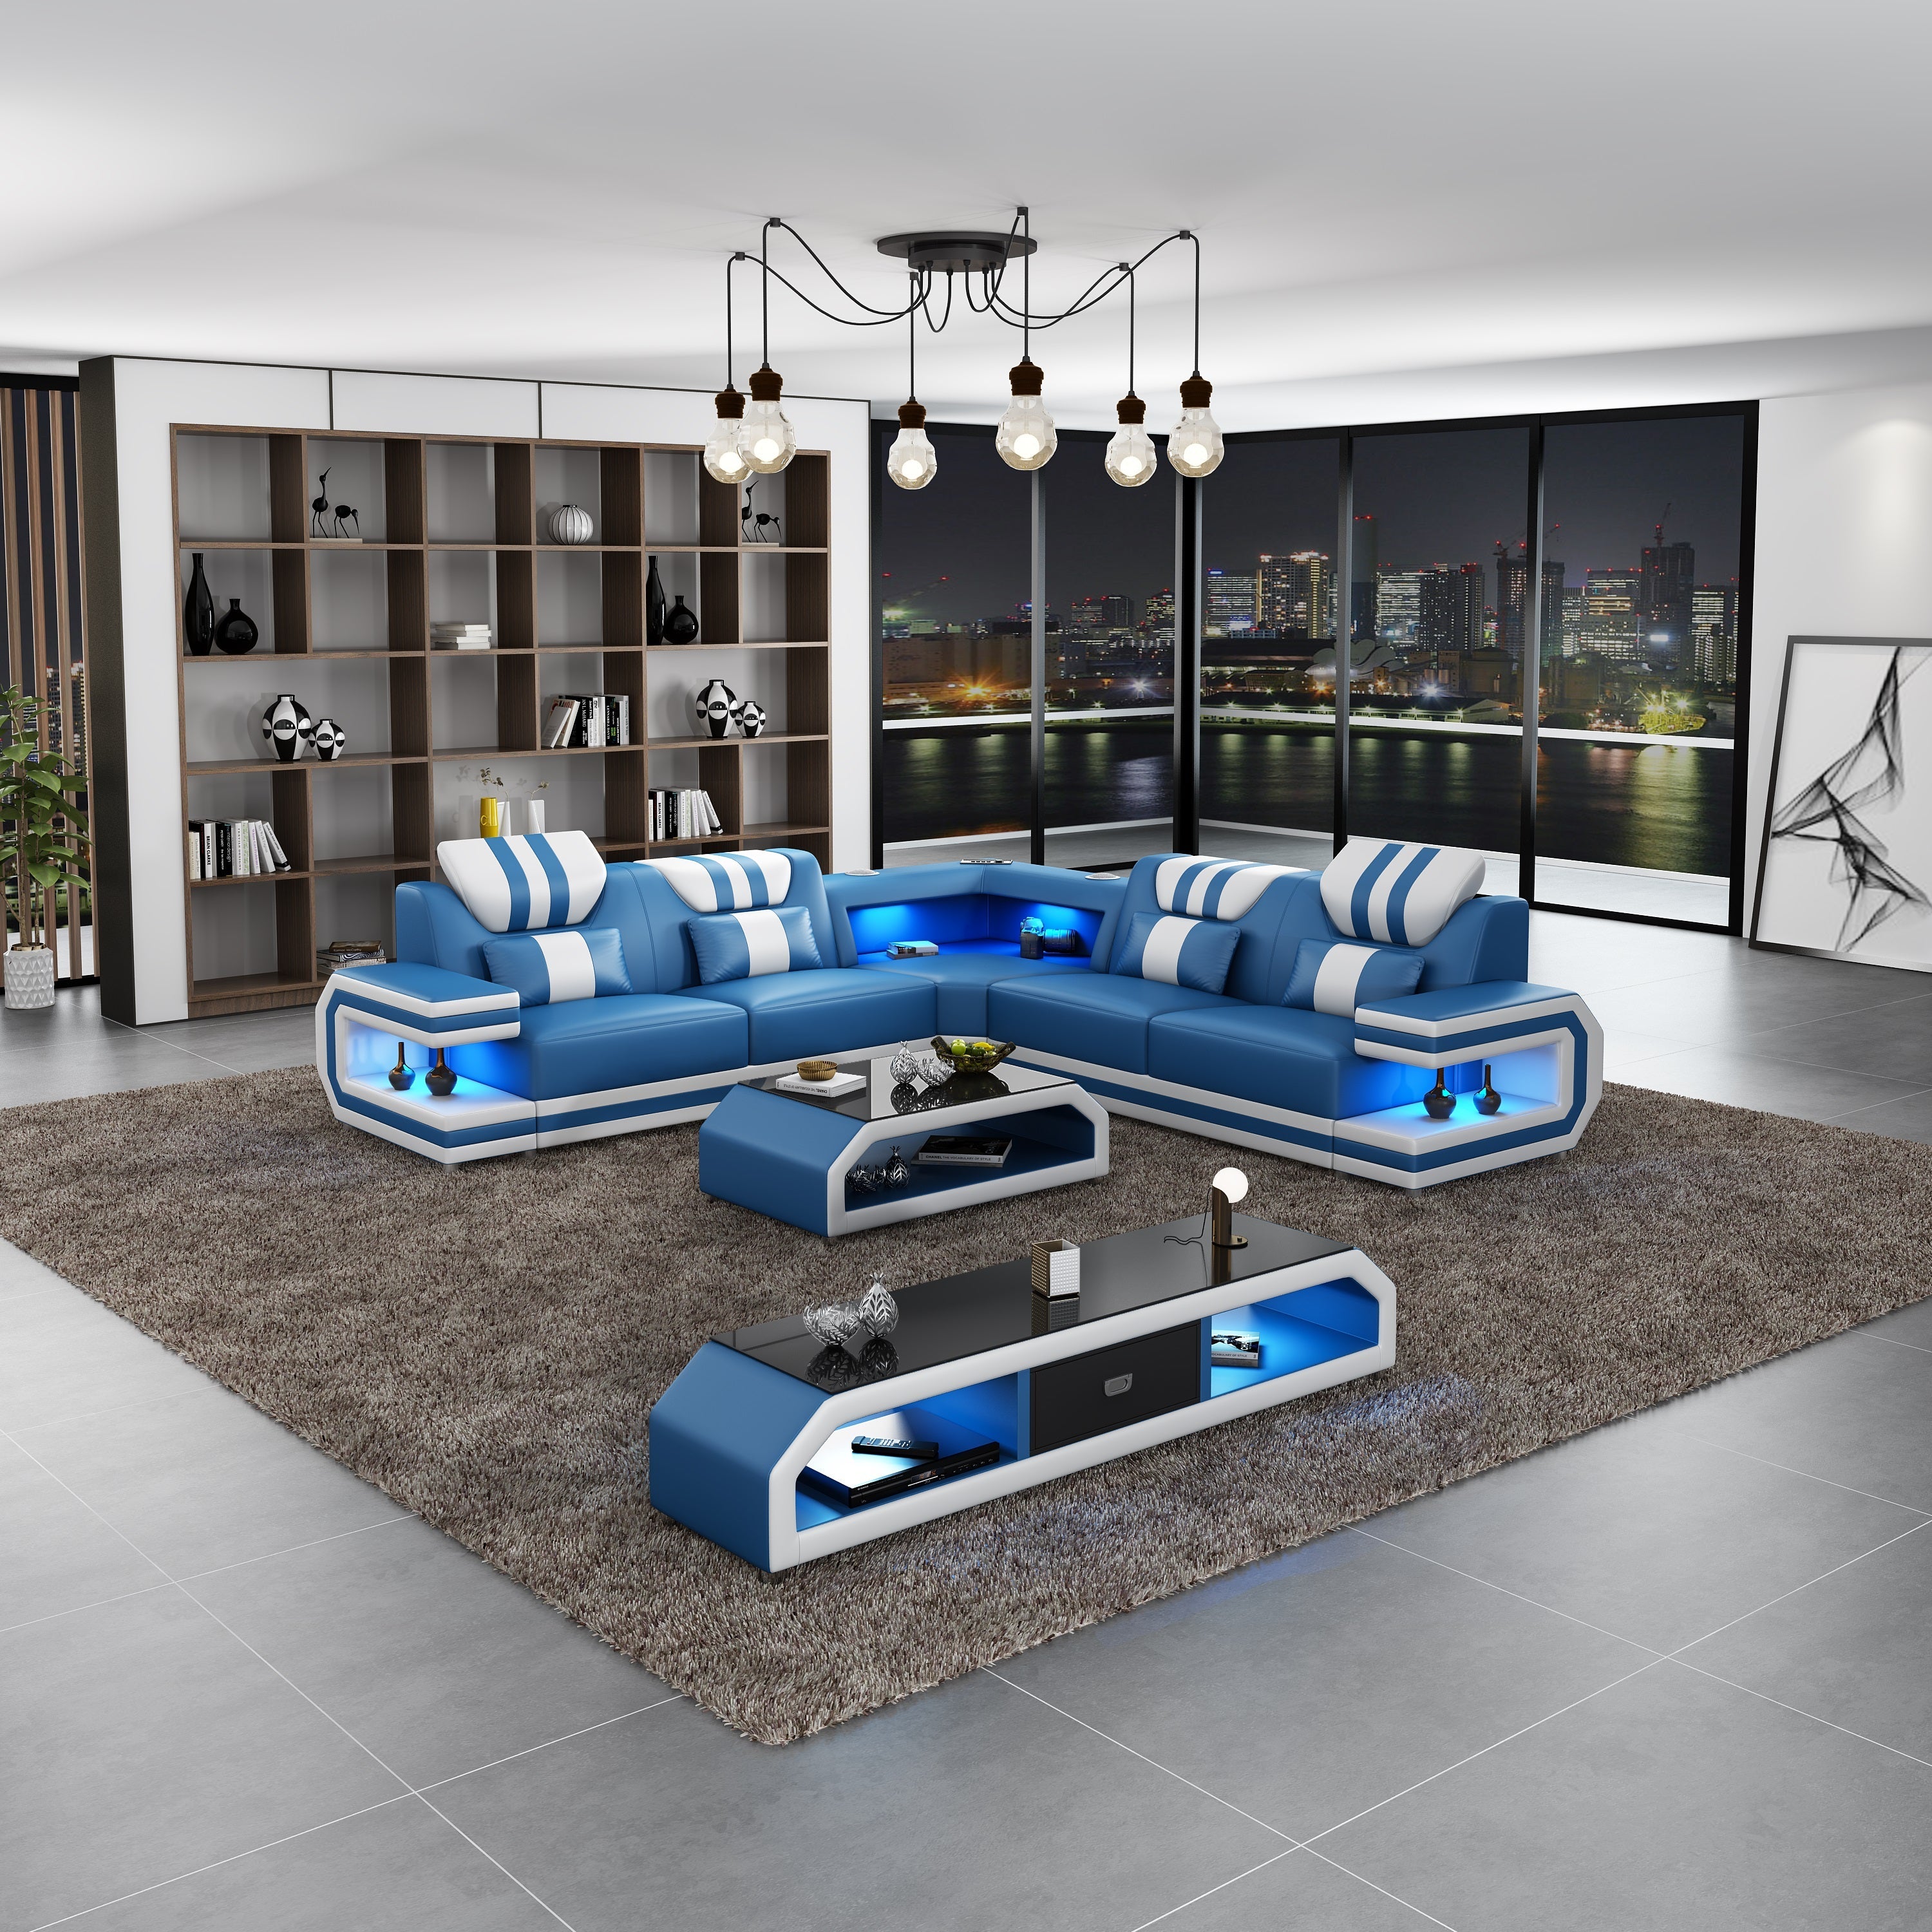 European Furniture - Lightsaber LED Sectional Blue White Italian Leather - LED-87772-BLUW - New Star Living